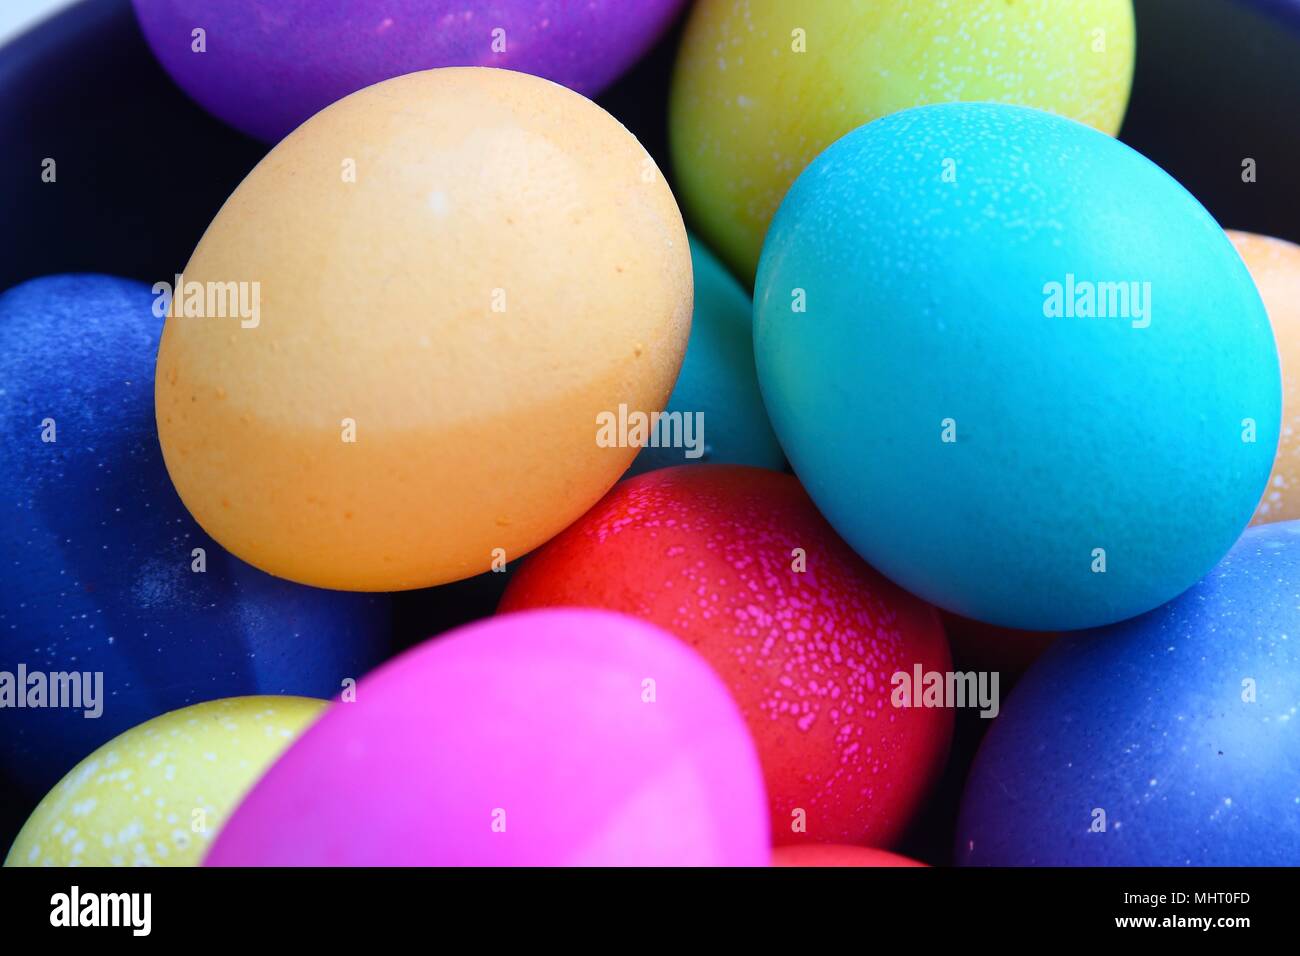 Groupe d'oeufs de Pâques colorés, dans une pile, close-up Banque D'Images